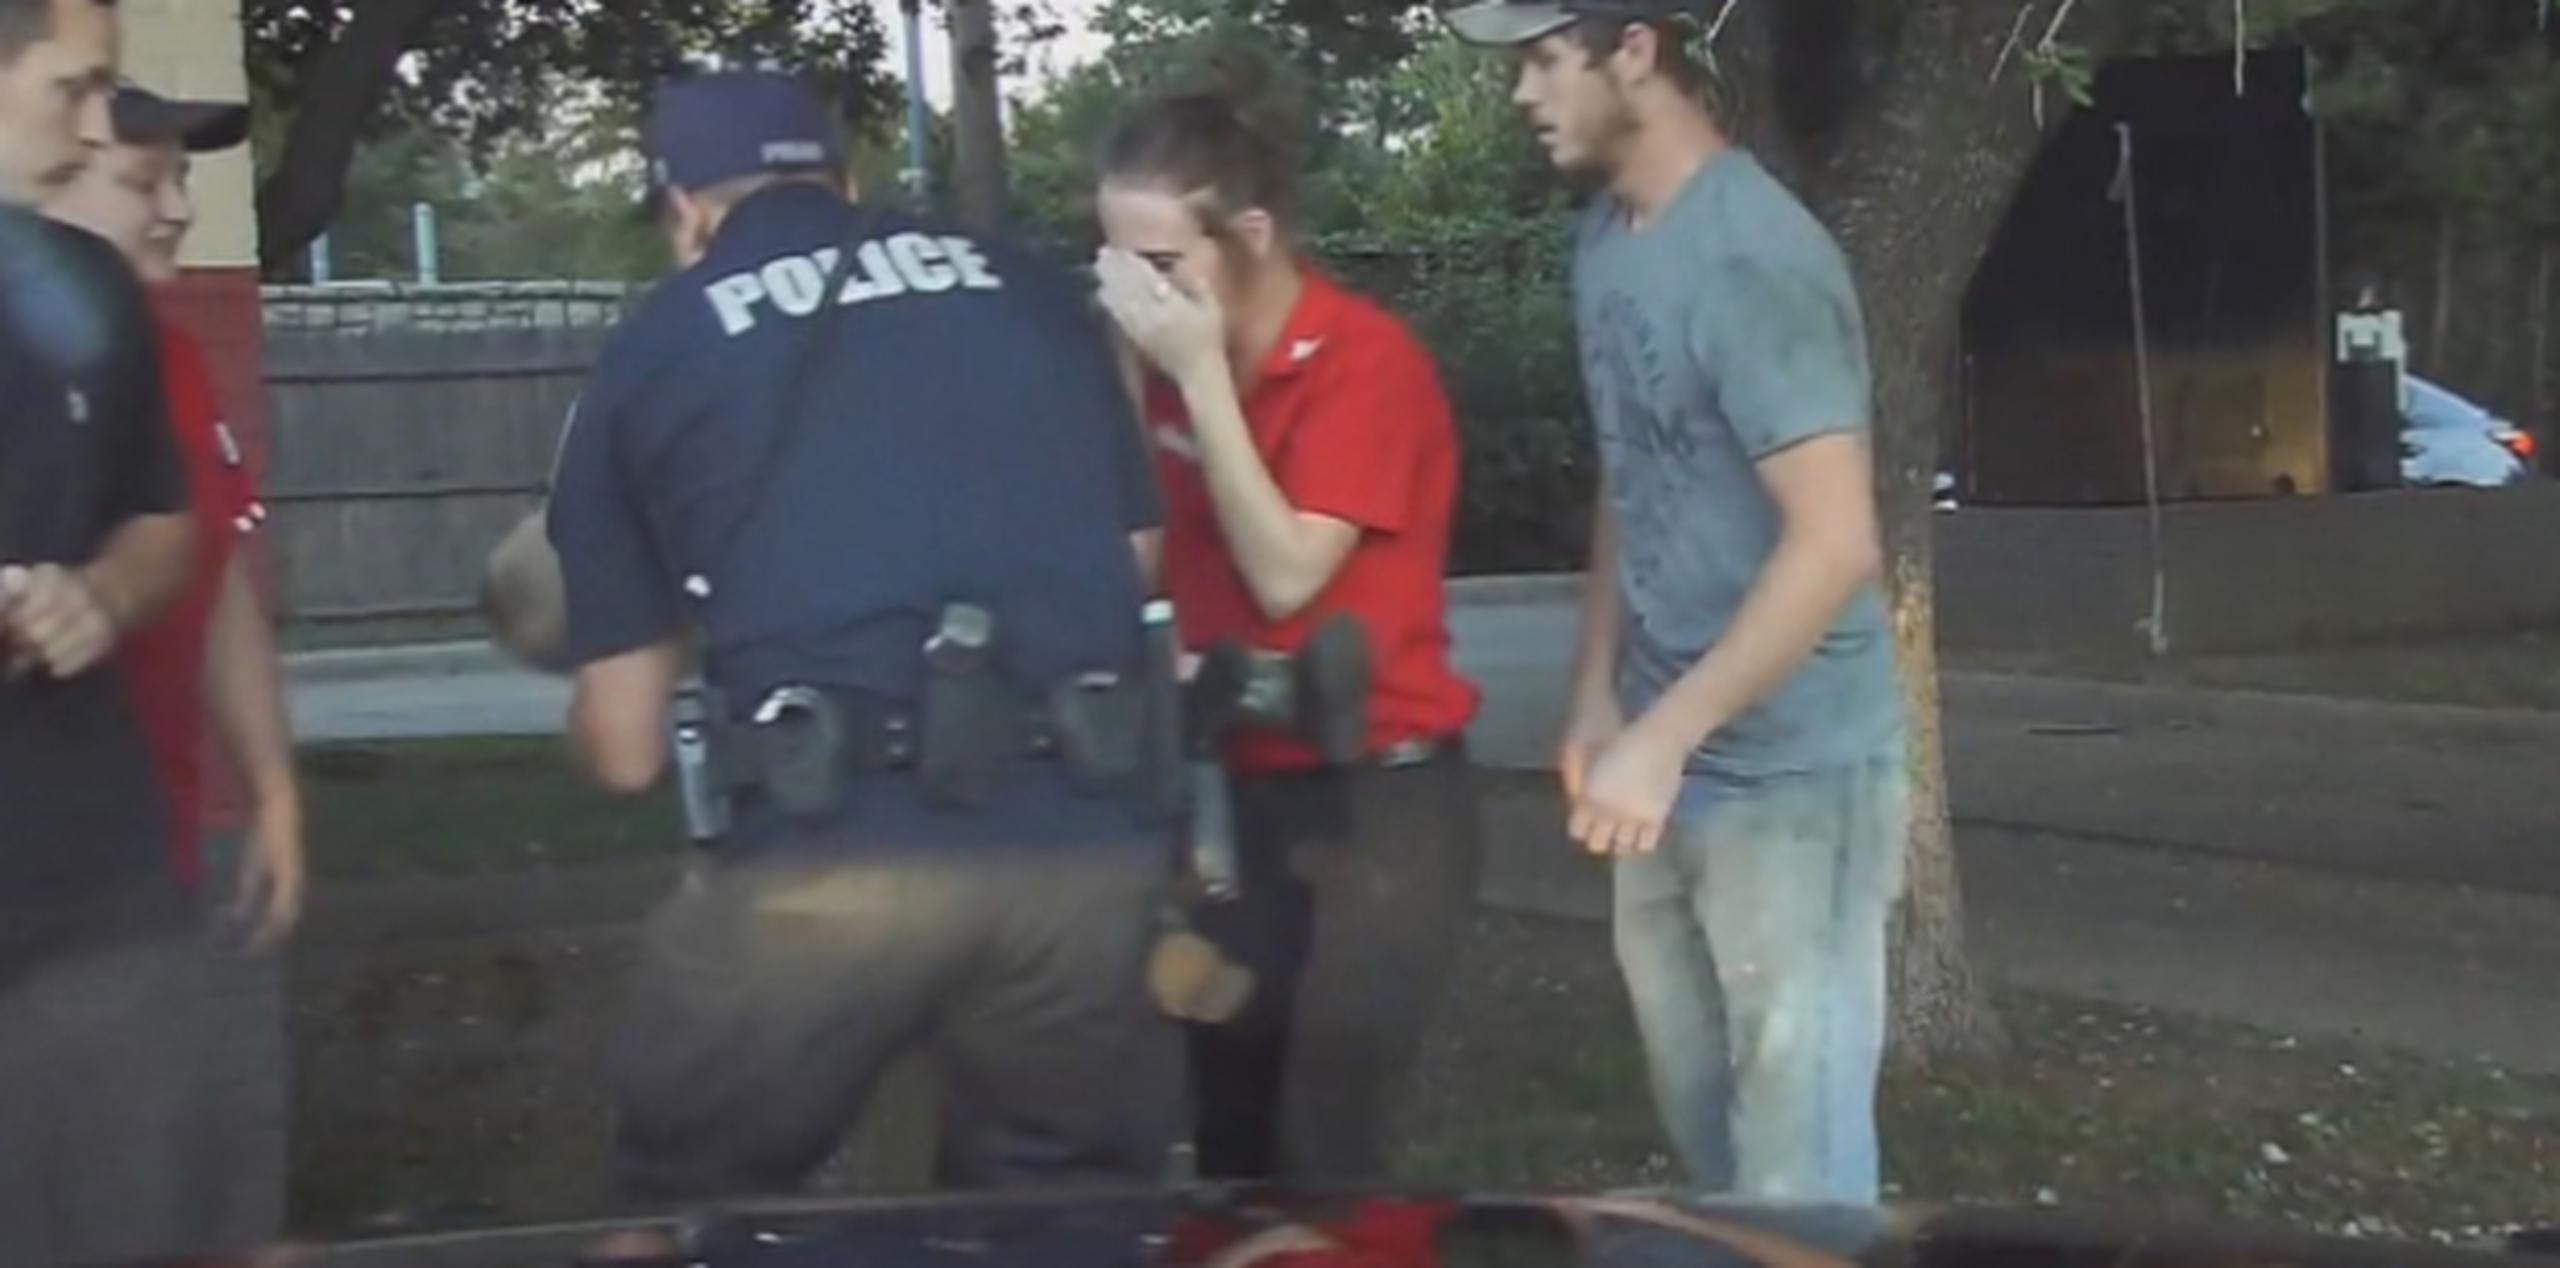 Cuando el policía llegó, se encontró con una mujer llorando desesperadamente mientras sostenía a un niño inconsciente entre sus brazos. (Captura / ABC News)